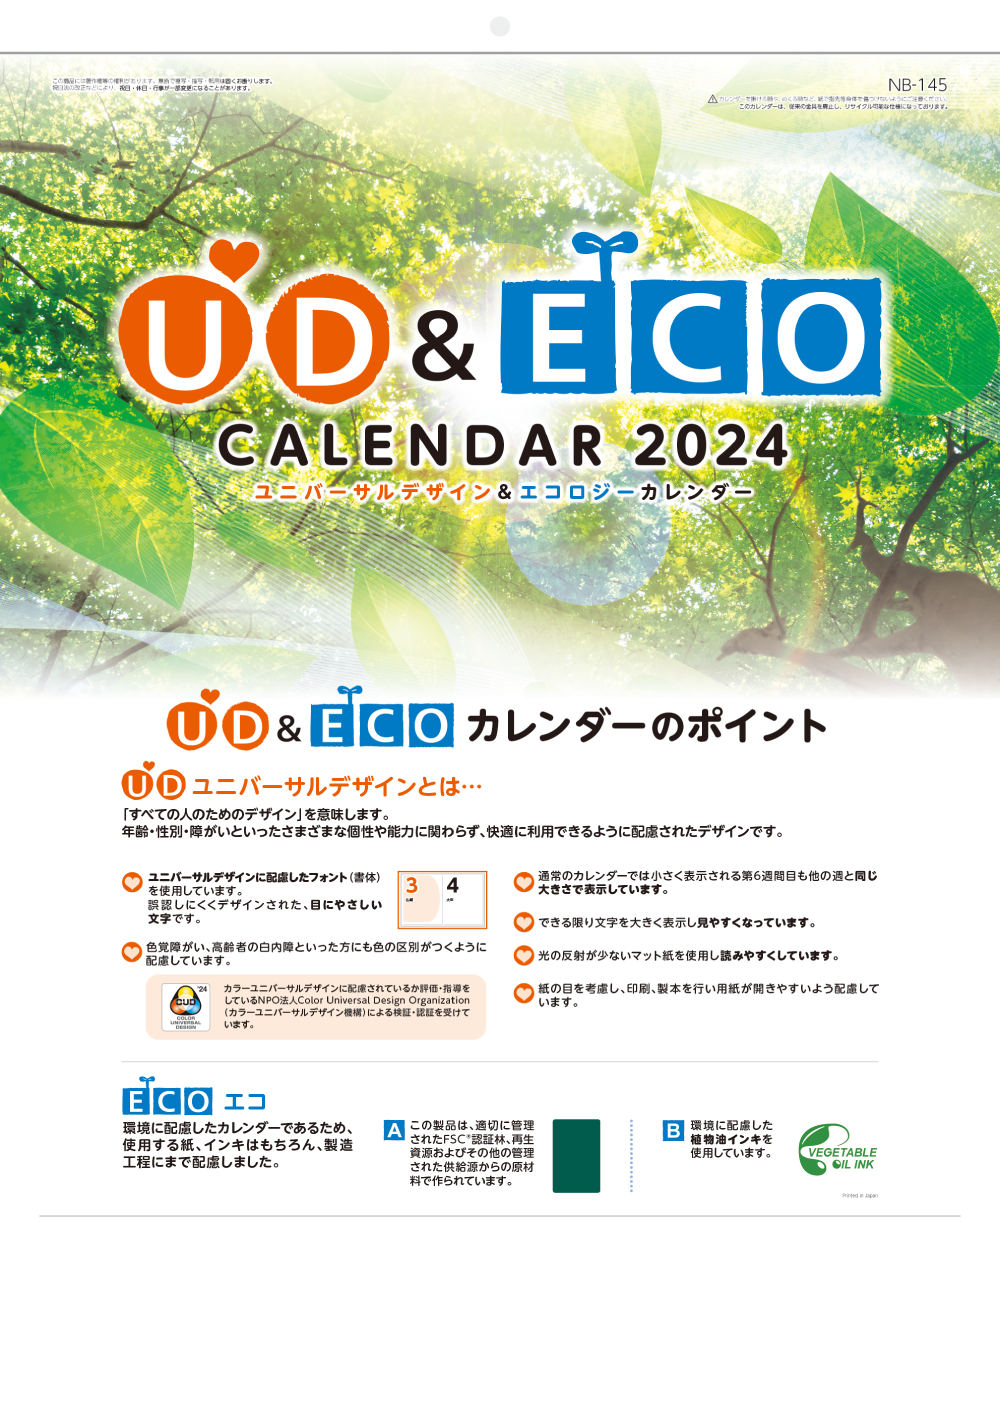 印刷通販プリントネットの名入れカレンダー印刷 Ud Ecoカレンダー 名入れ